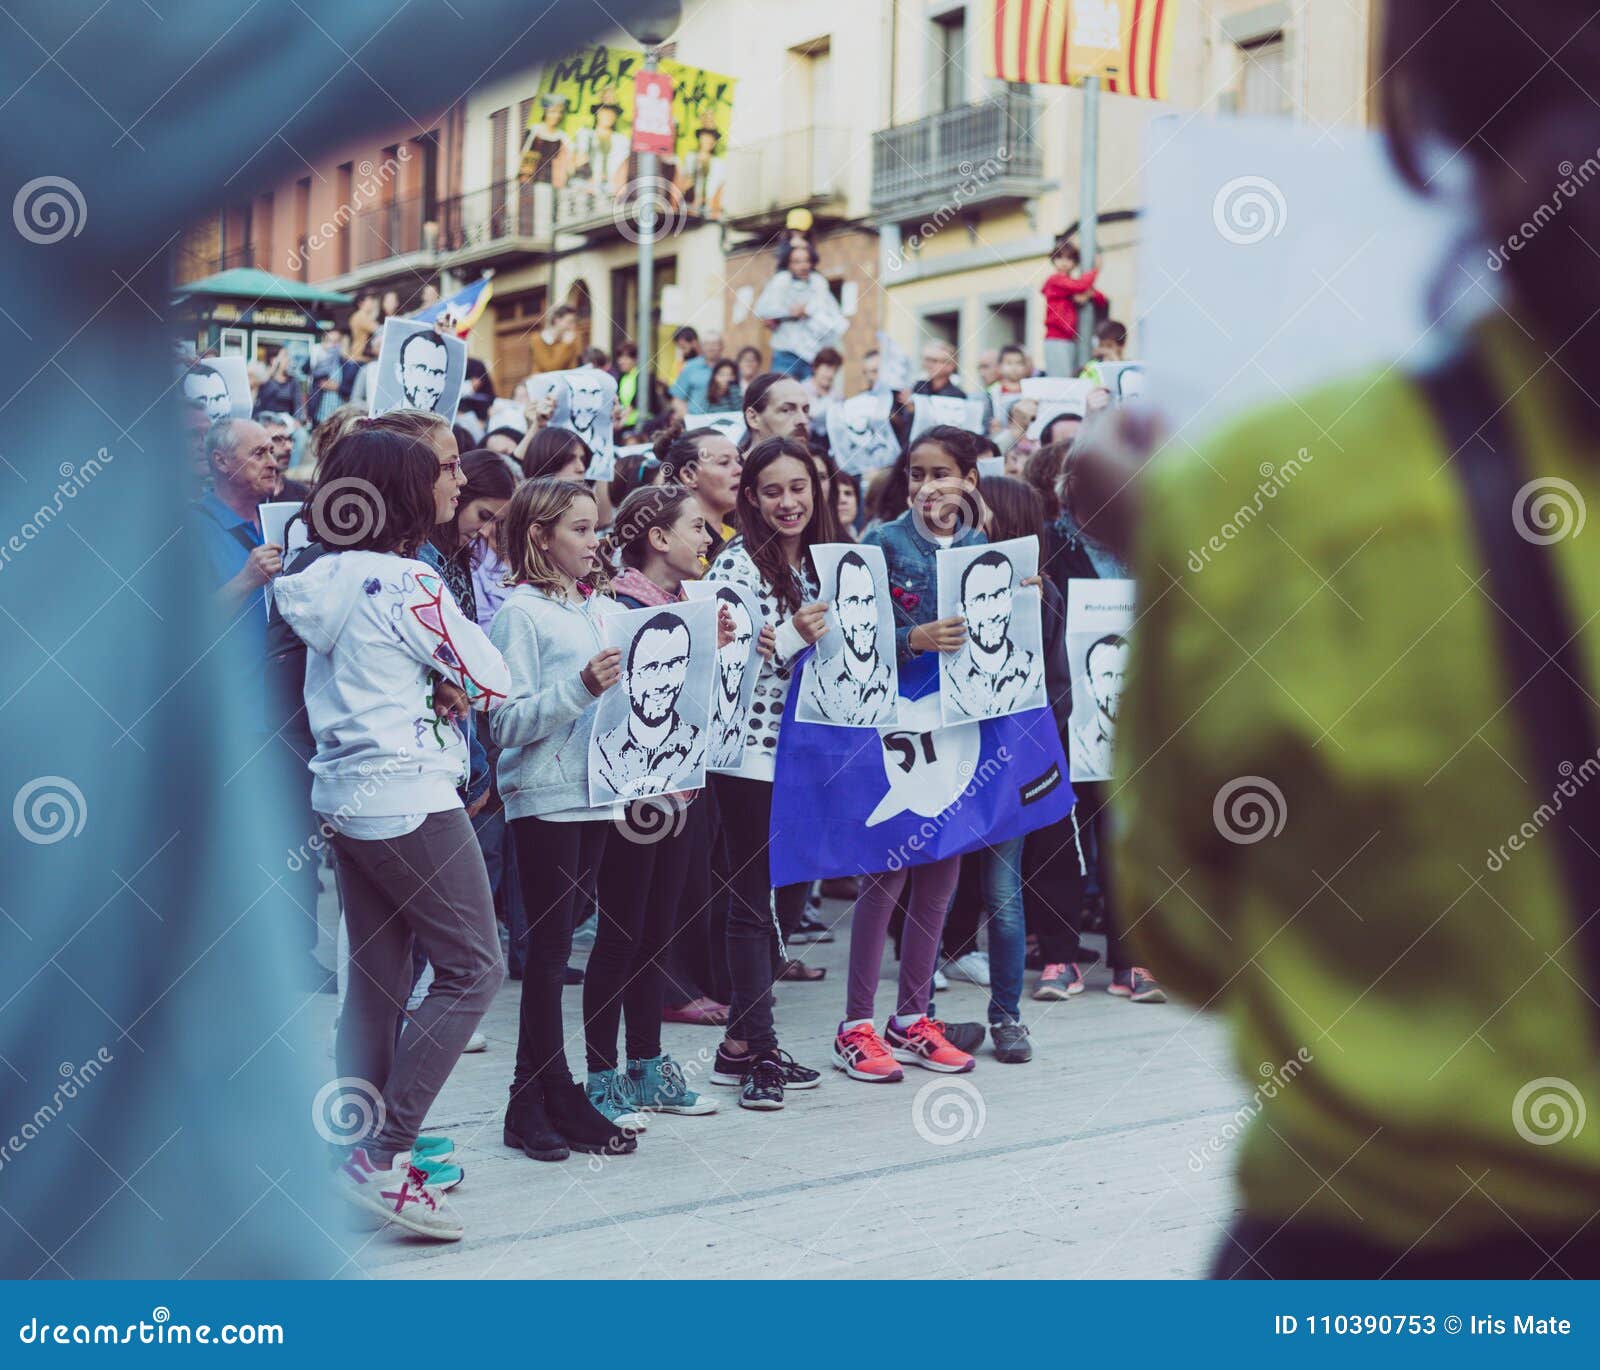 Katalanische Unabhängigkeitsbewegung. Bild eines Protestes in Katalonien Sie verlangen nach der Freigabe von gefangen gesetzten katalanischen Unabhängigkeitsführern und auch bitten um Demokratie Einige Kinder, die Freiheit für politische Gefangene verlangen